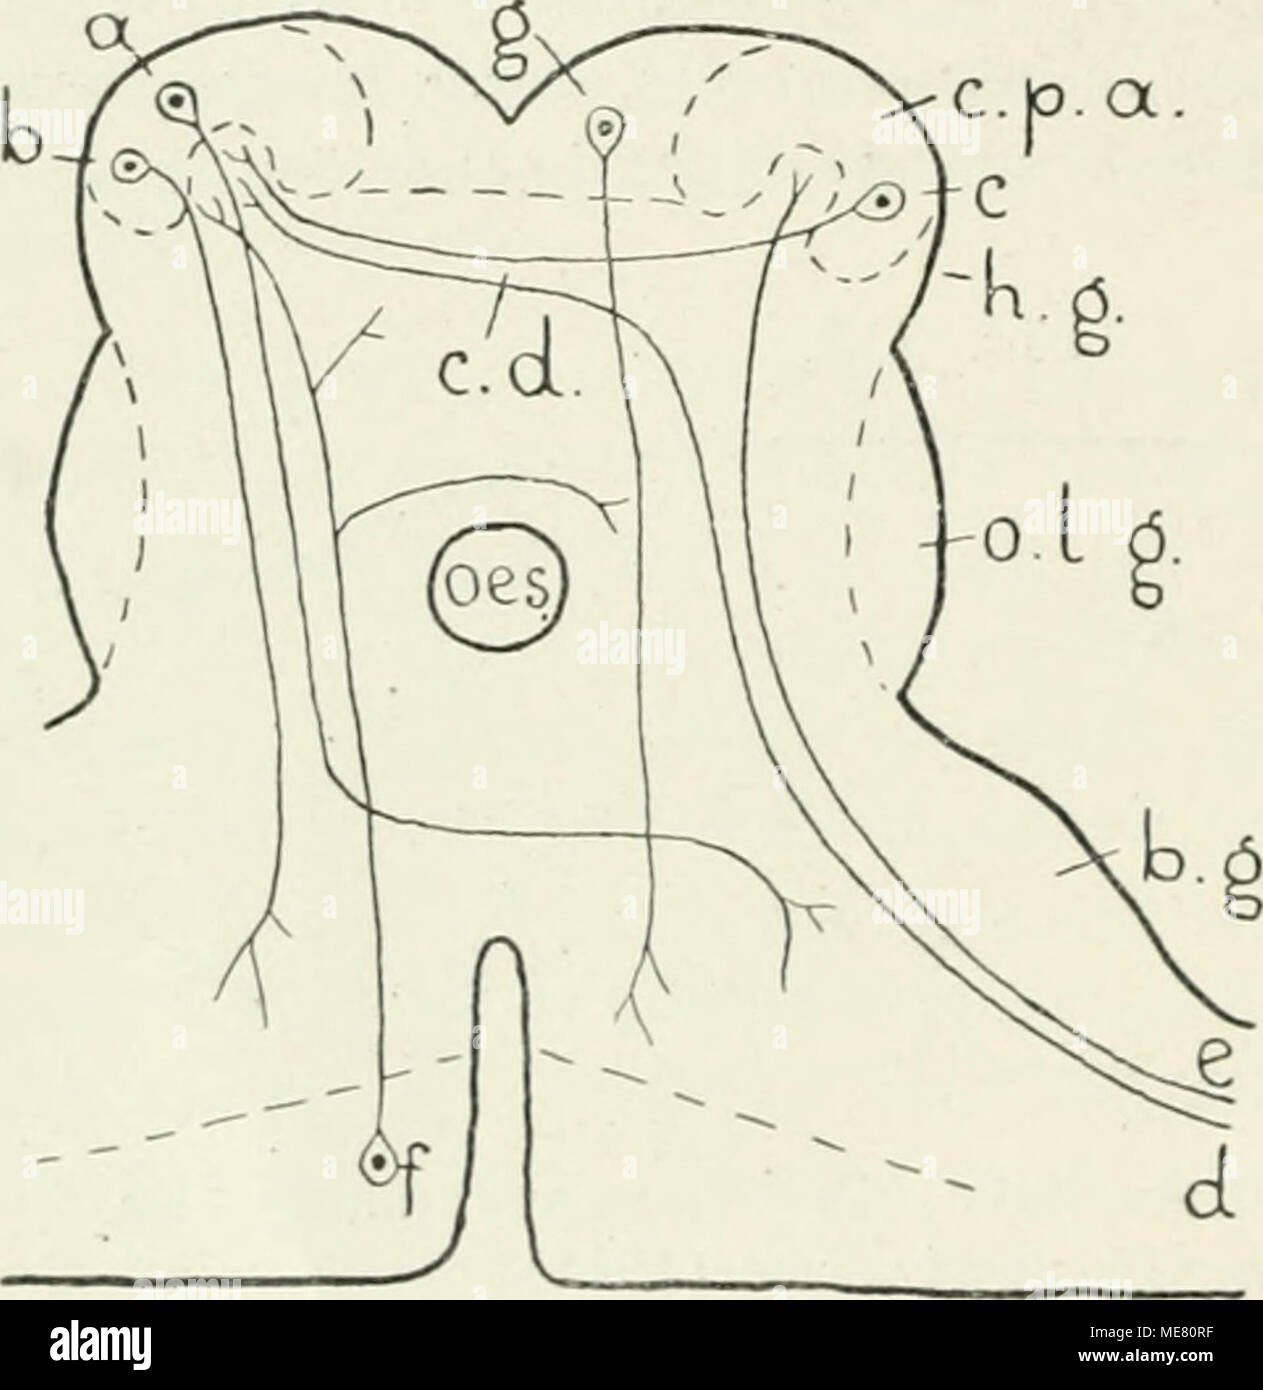 . Die Leitungsbahnen im Nervensystem der wirbellosen Tiere . Schematischer Querschnitt durch da.s Zentralnervensystem von Epeira. Nach Haller (1912). a, b, c, f, g = Ganglienzellen d, e = Nervenfasern -'^ h. g. = Bauchganglion r. d. â commissiu-a dorsalis r. p. a. = corpus pedunculatun; anterius h. g. â -=â Hirnganglion oes. = Loch, wo der Oesophagus liin- durchtritt. o. l. g. = Oberlippenganglion Die StricheUinieu begrenzen die (Jang lienzellgruppen. Organe. Bei den Sinneskegeln und Sinnesborsten sah er unter der Grup- pe von Sinneszellkernen eine Gruppe in Nervenfasern gelagerter Kerne. Die  Stock Photo